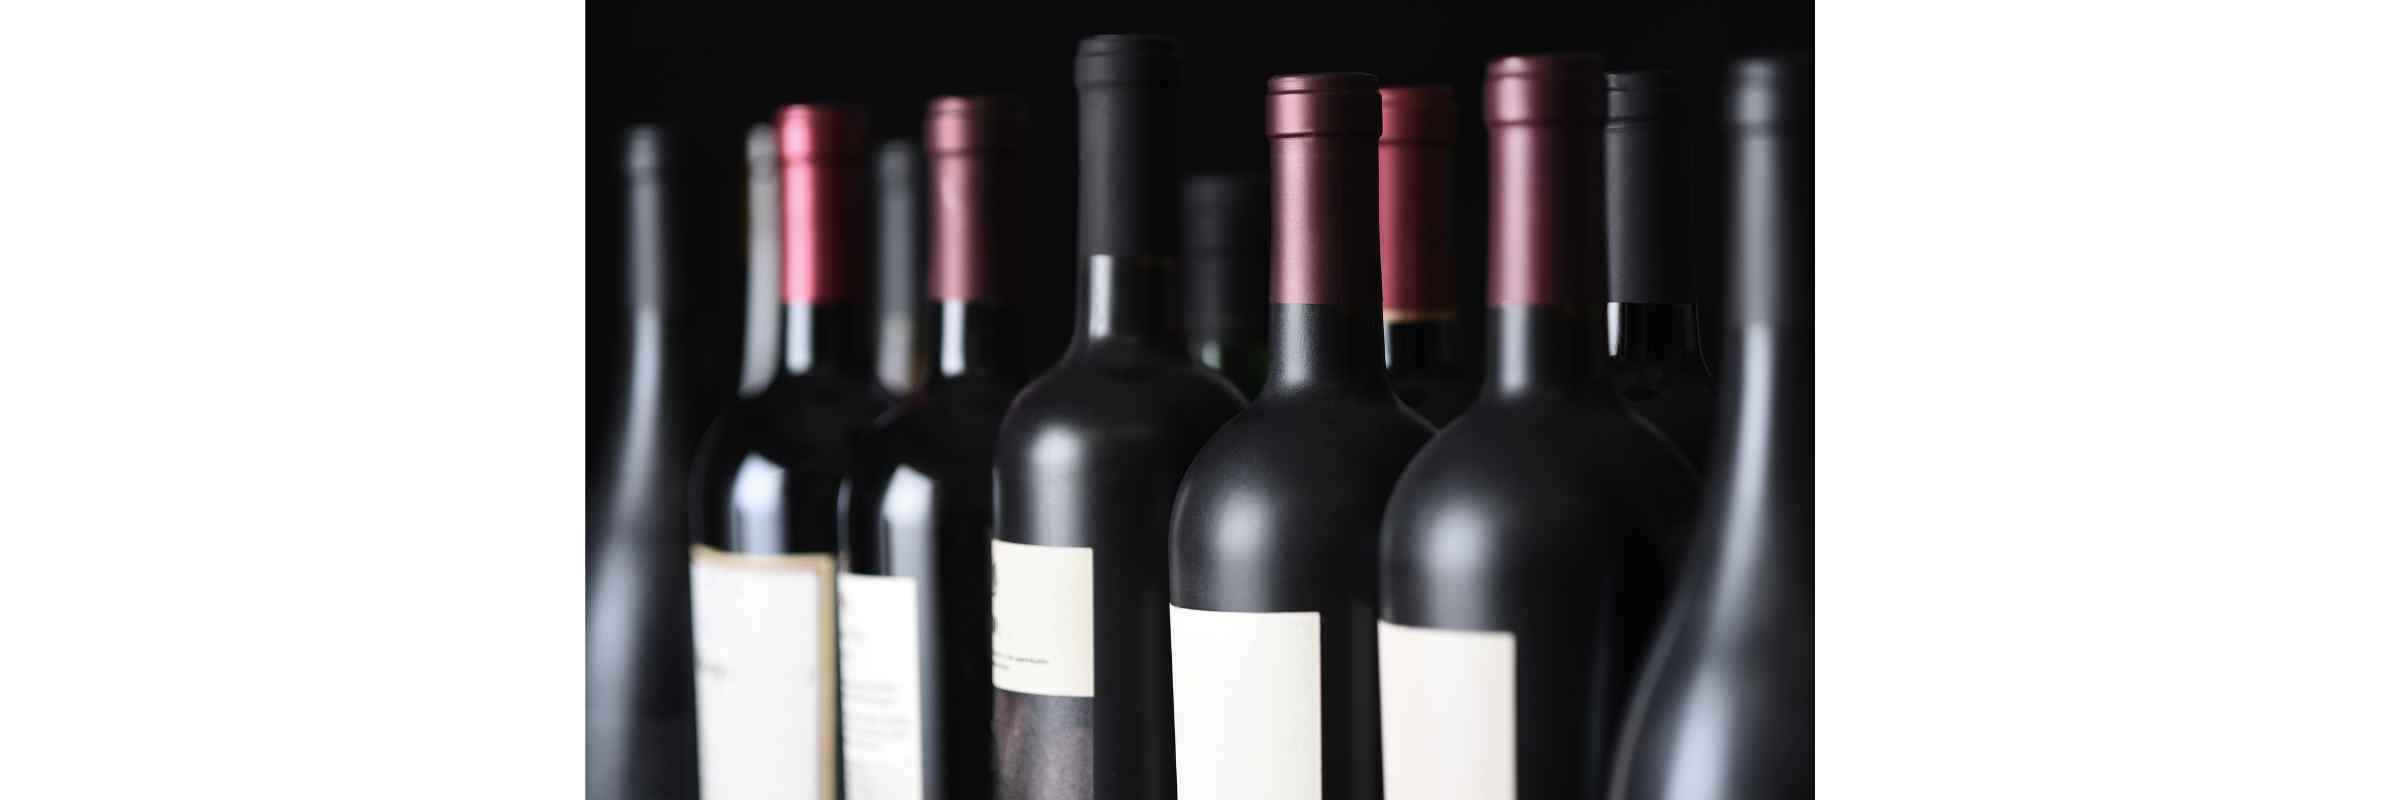 Pinot Noir In Storage